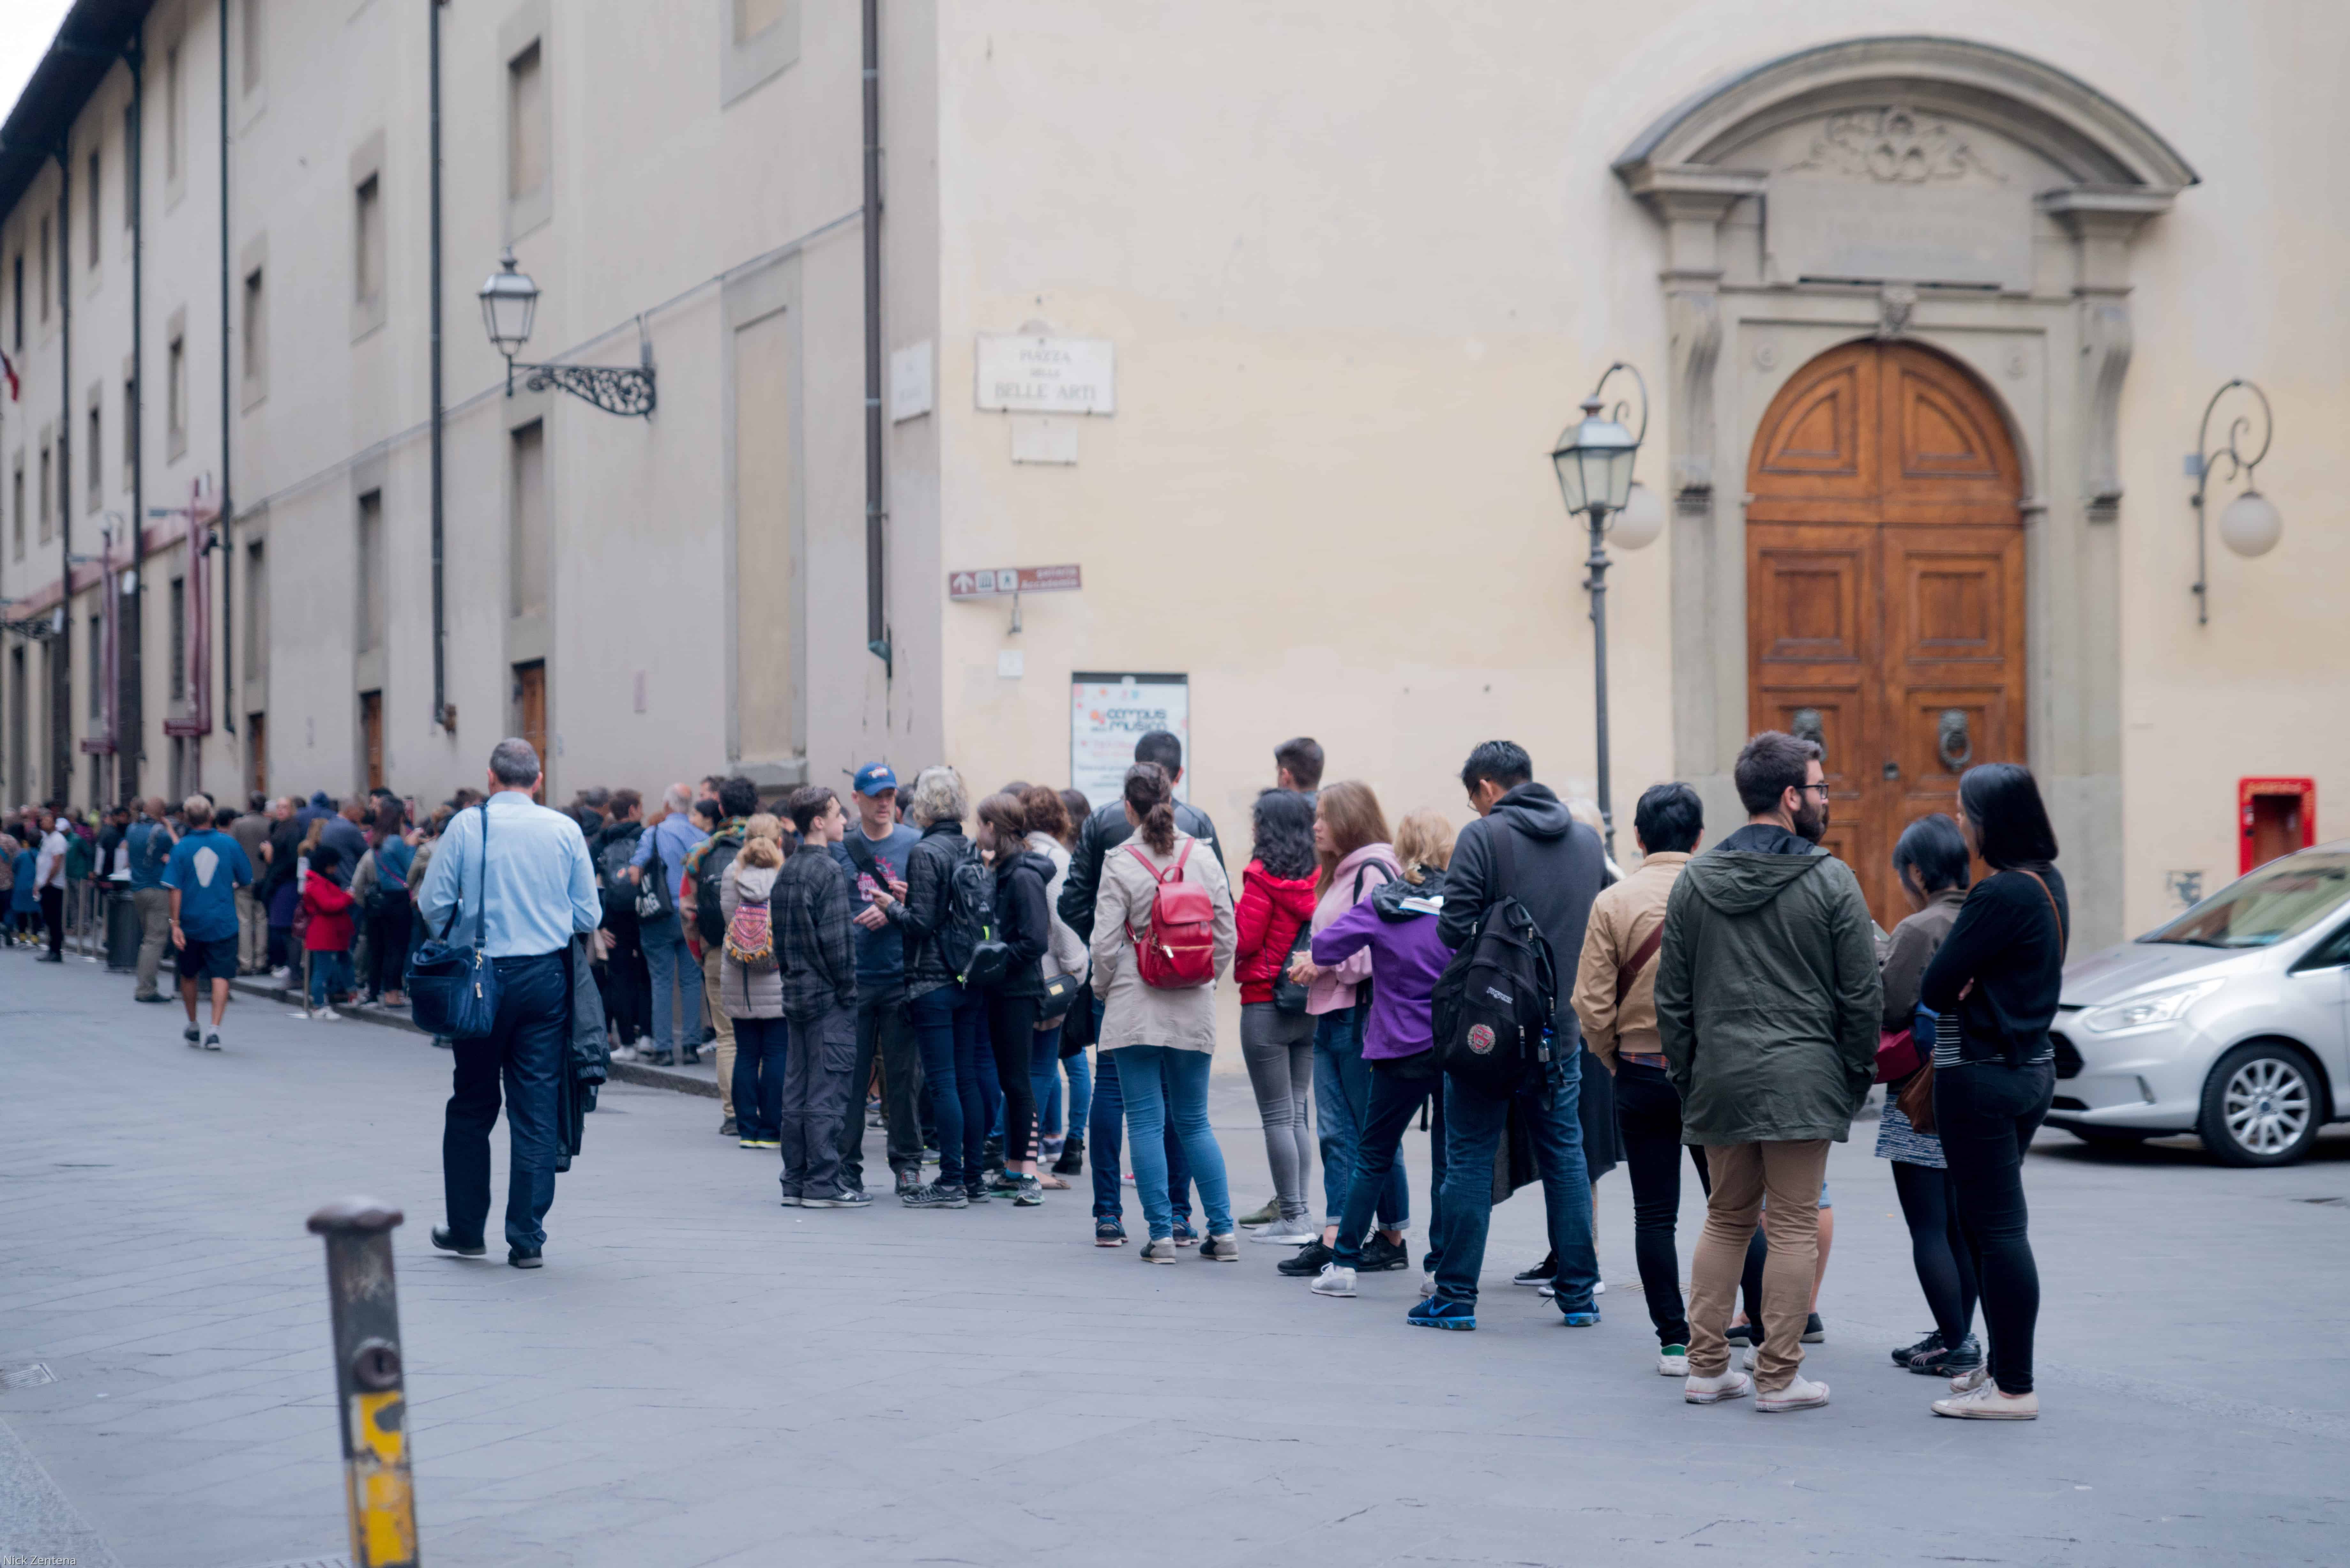 line to enter galleria dell'accademia